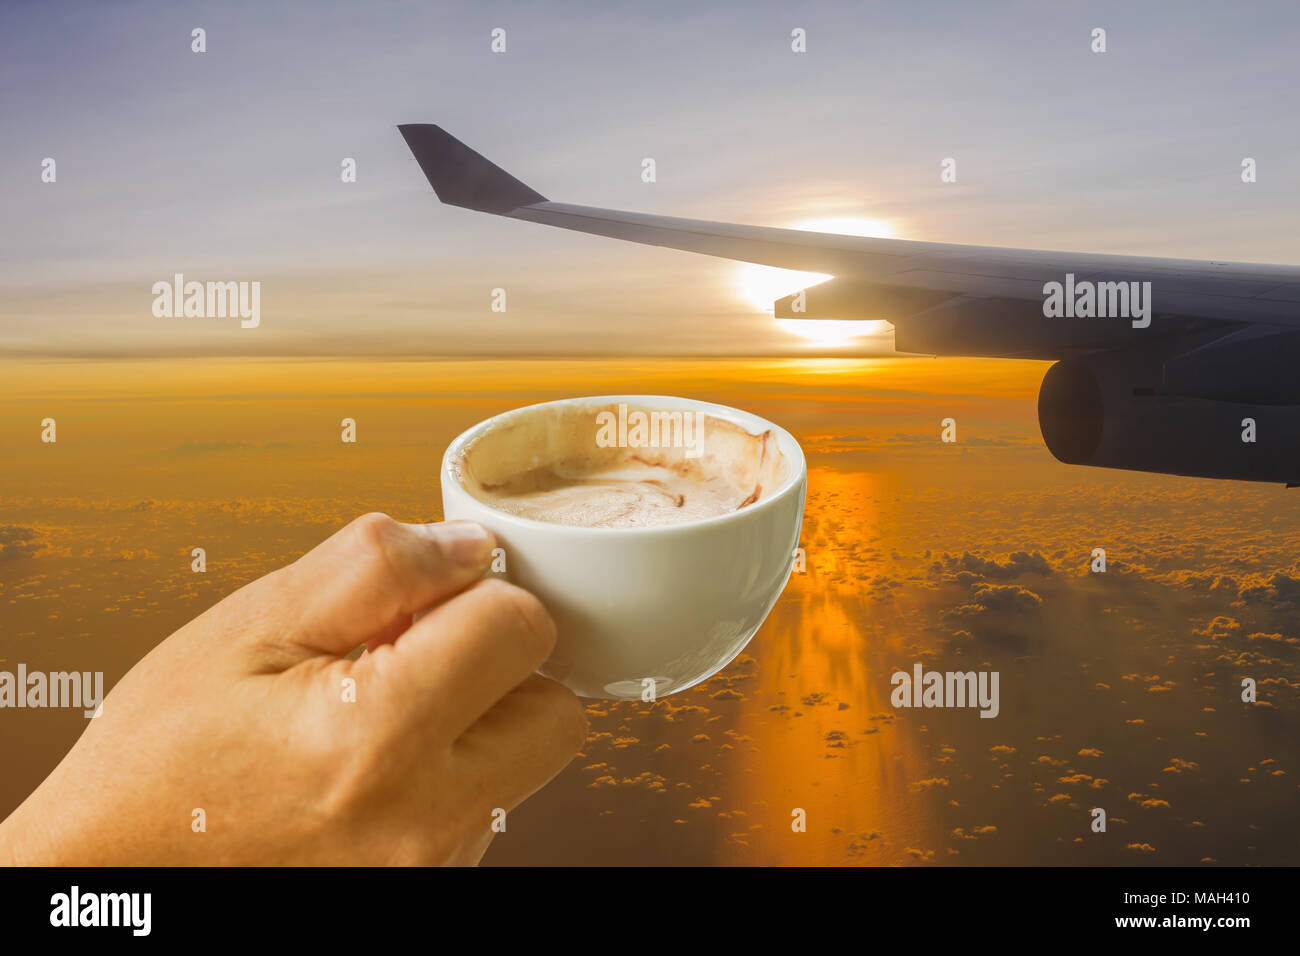 Tasse Kaffee in der Hand auf Wing's Flugzeug gegen goldenes Sonnenlicht am frühen Morgen Hintergrund Stockfoto